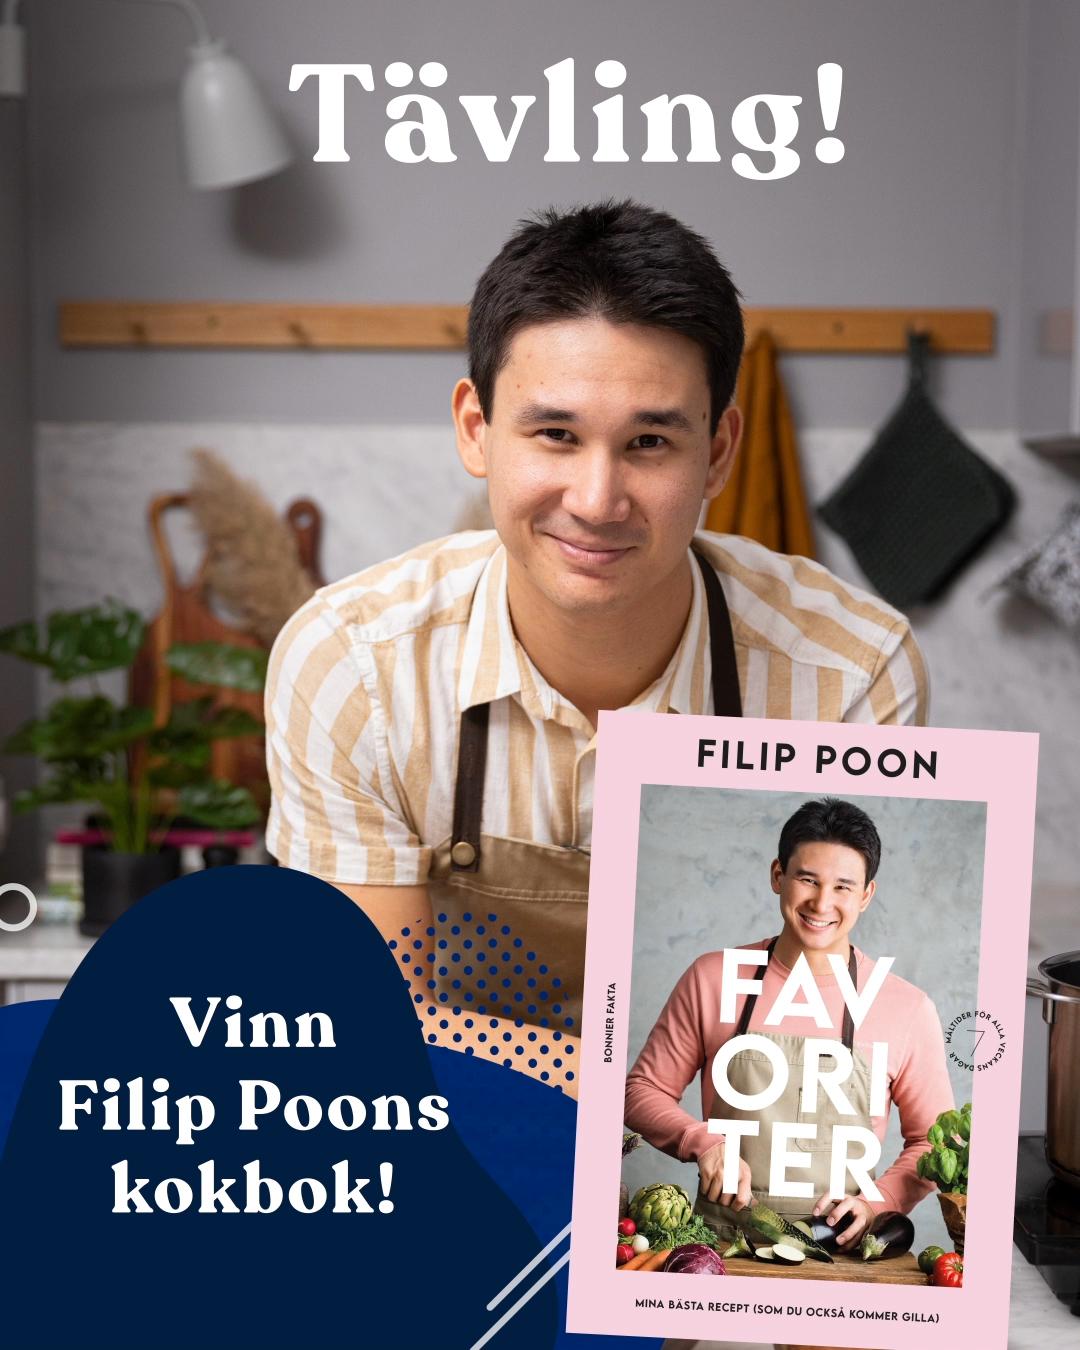 Var med och tävla om att vinna Filip Poons kokbok ”Favoriter”.